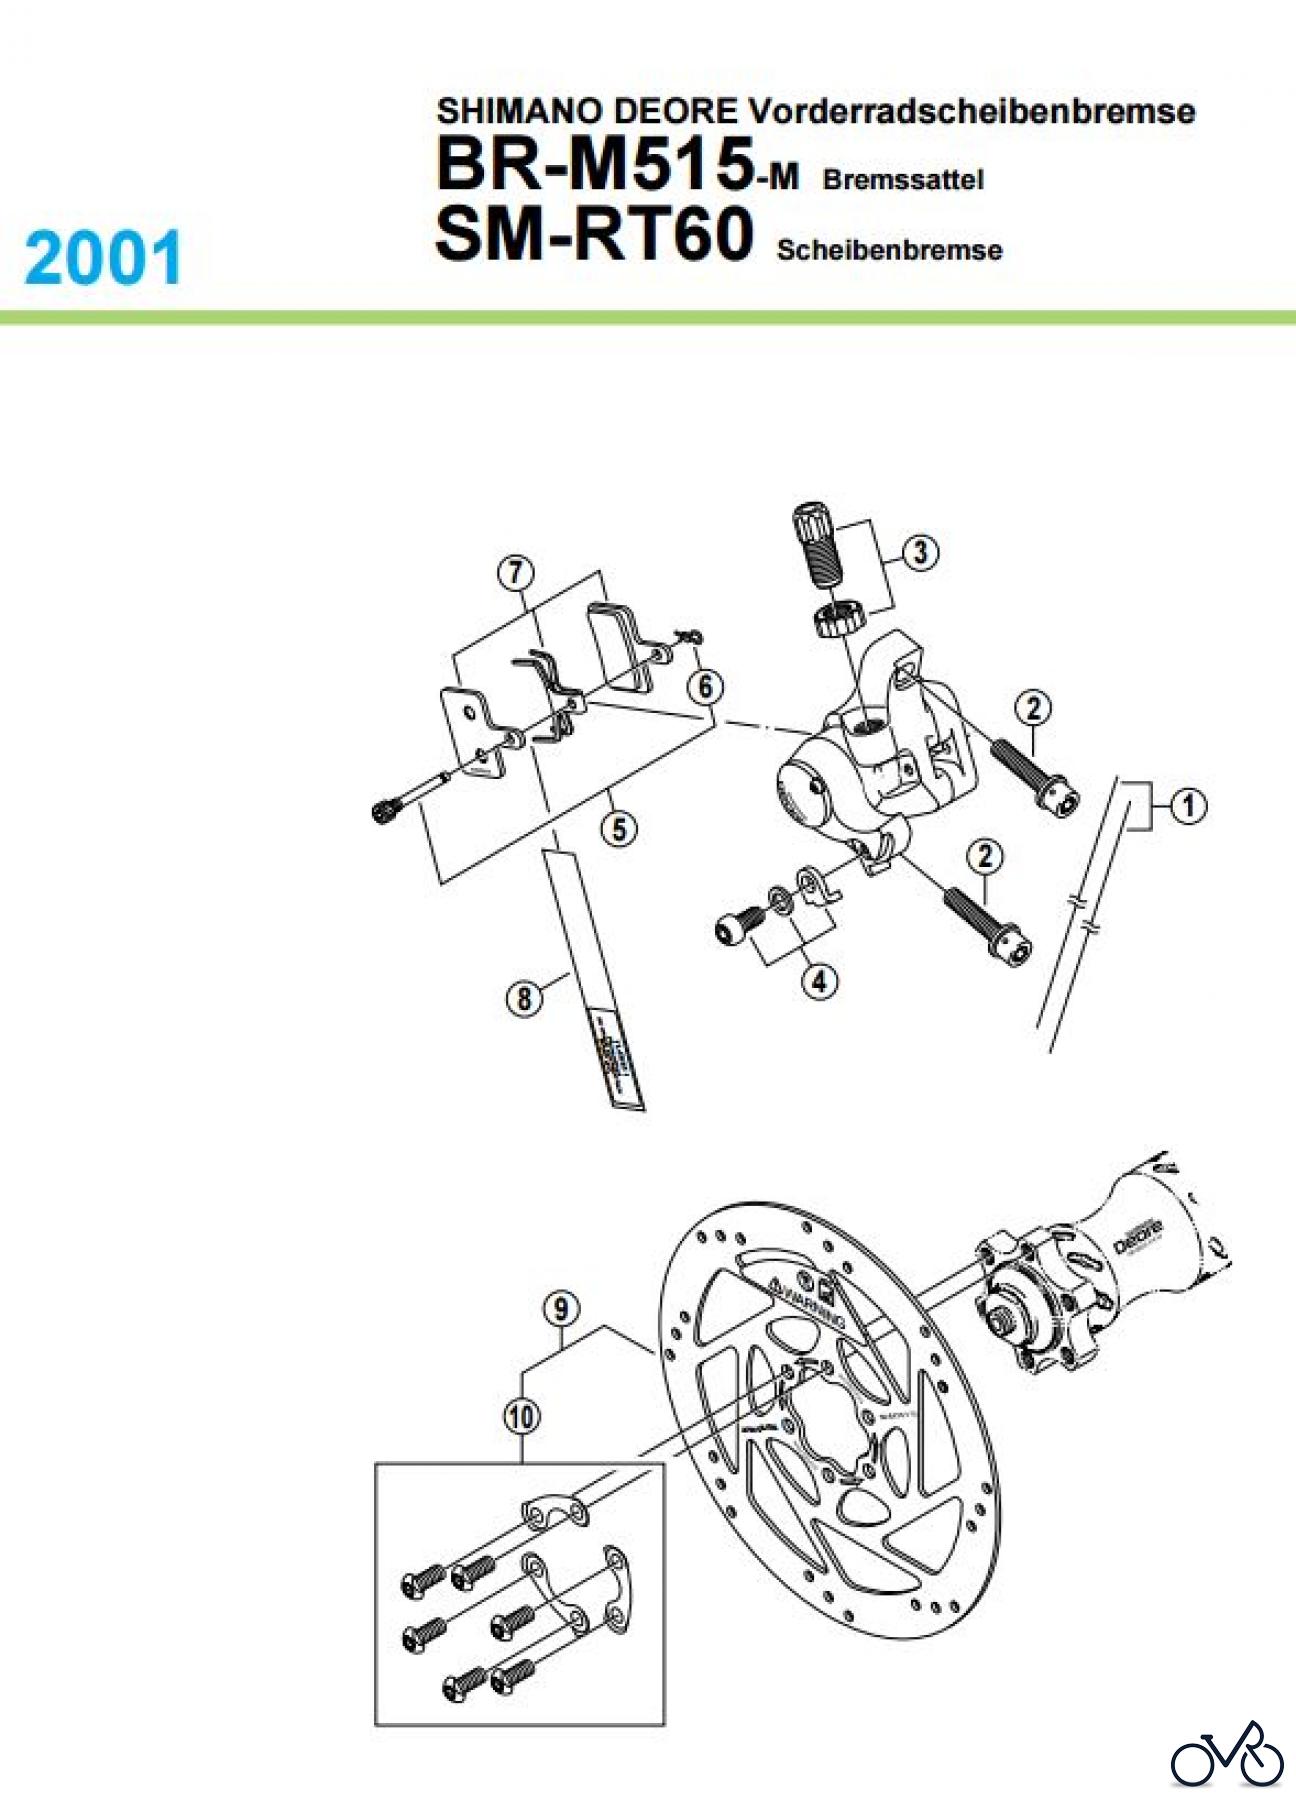  Shimano BR Brake - Bremse BR-M515-M, 2001 SHIMANO DEORE Vorderradscheibenbremse